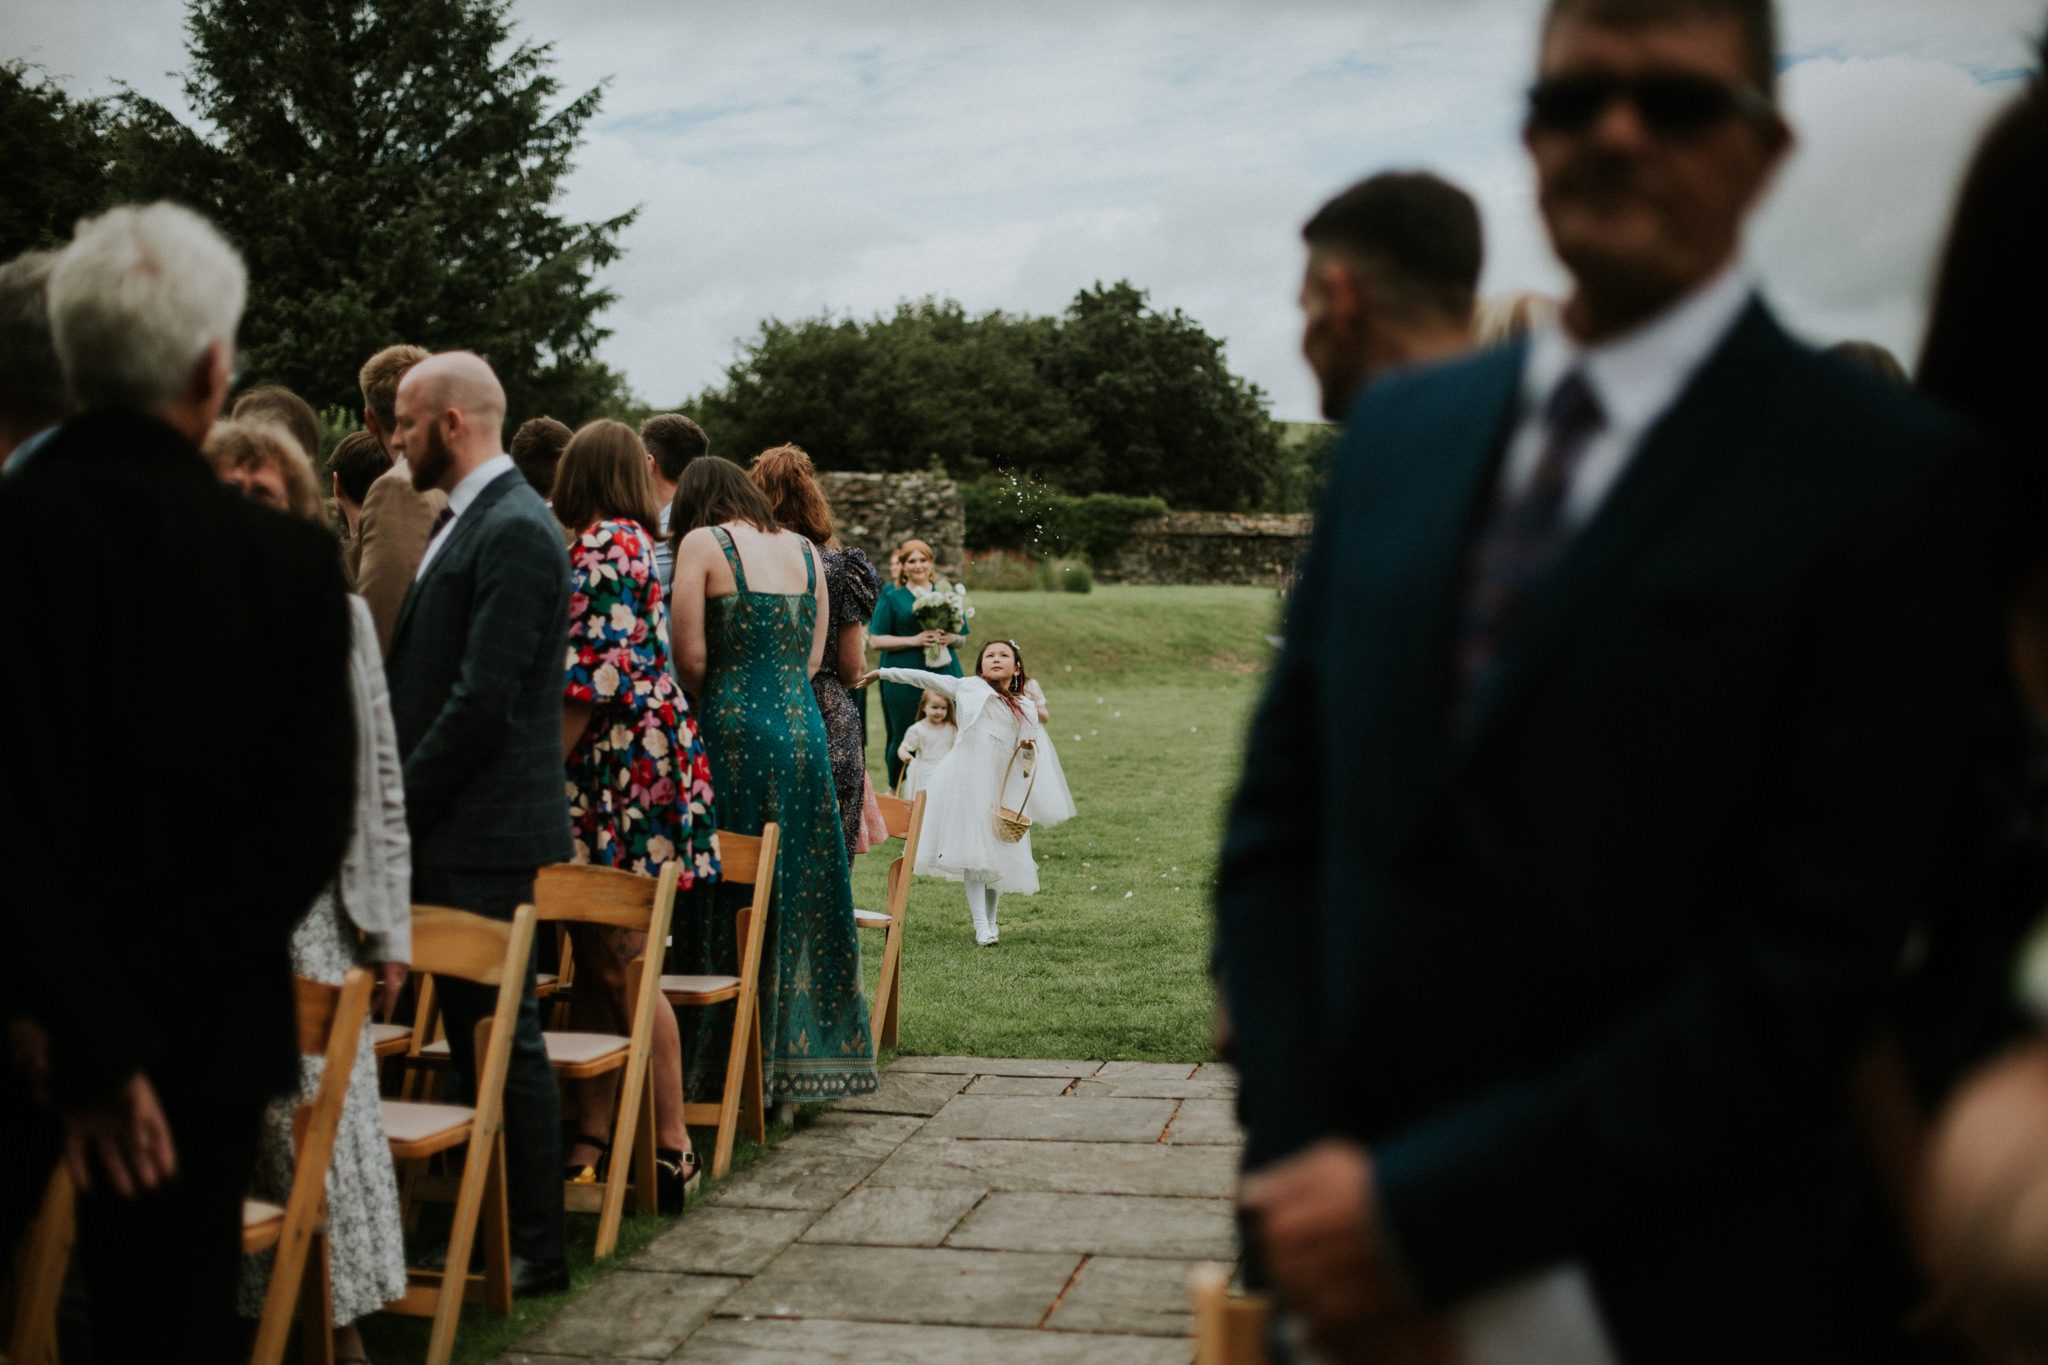 Young bridesmaid throws petals at a wedding ceremony at Trevenna Barns in Cornwall